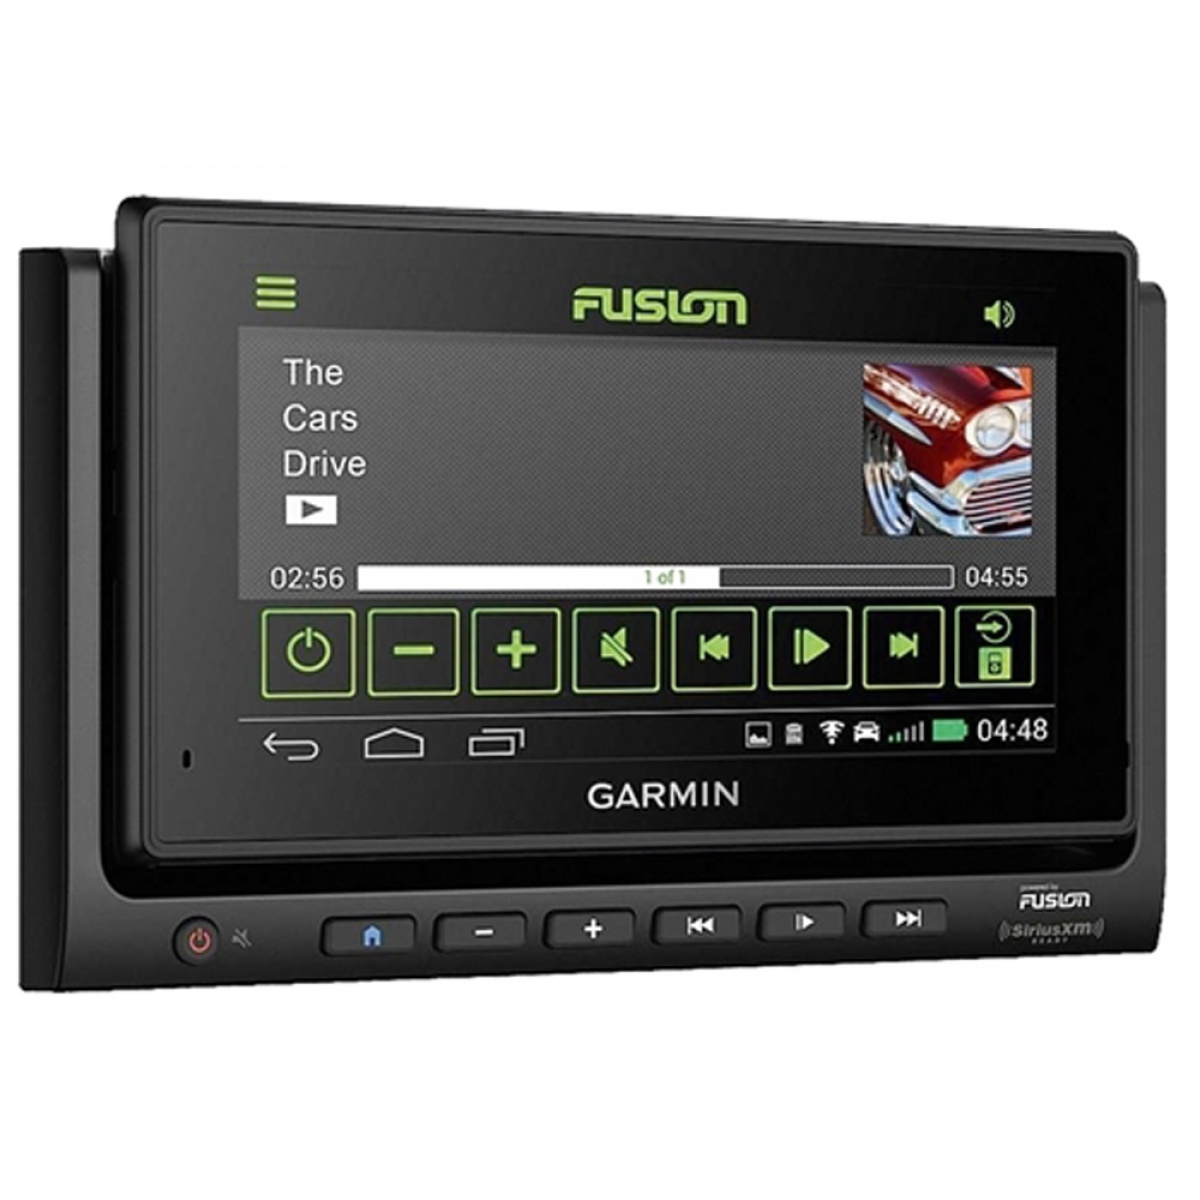 Fusion/Garmin Multimediaenhet RV-BBT602